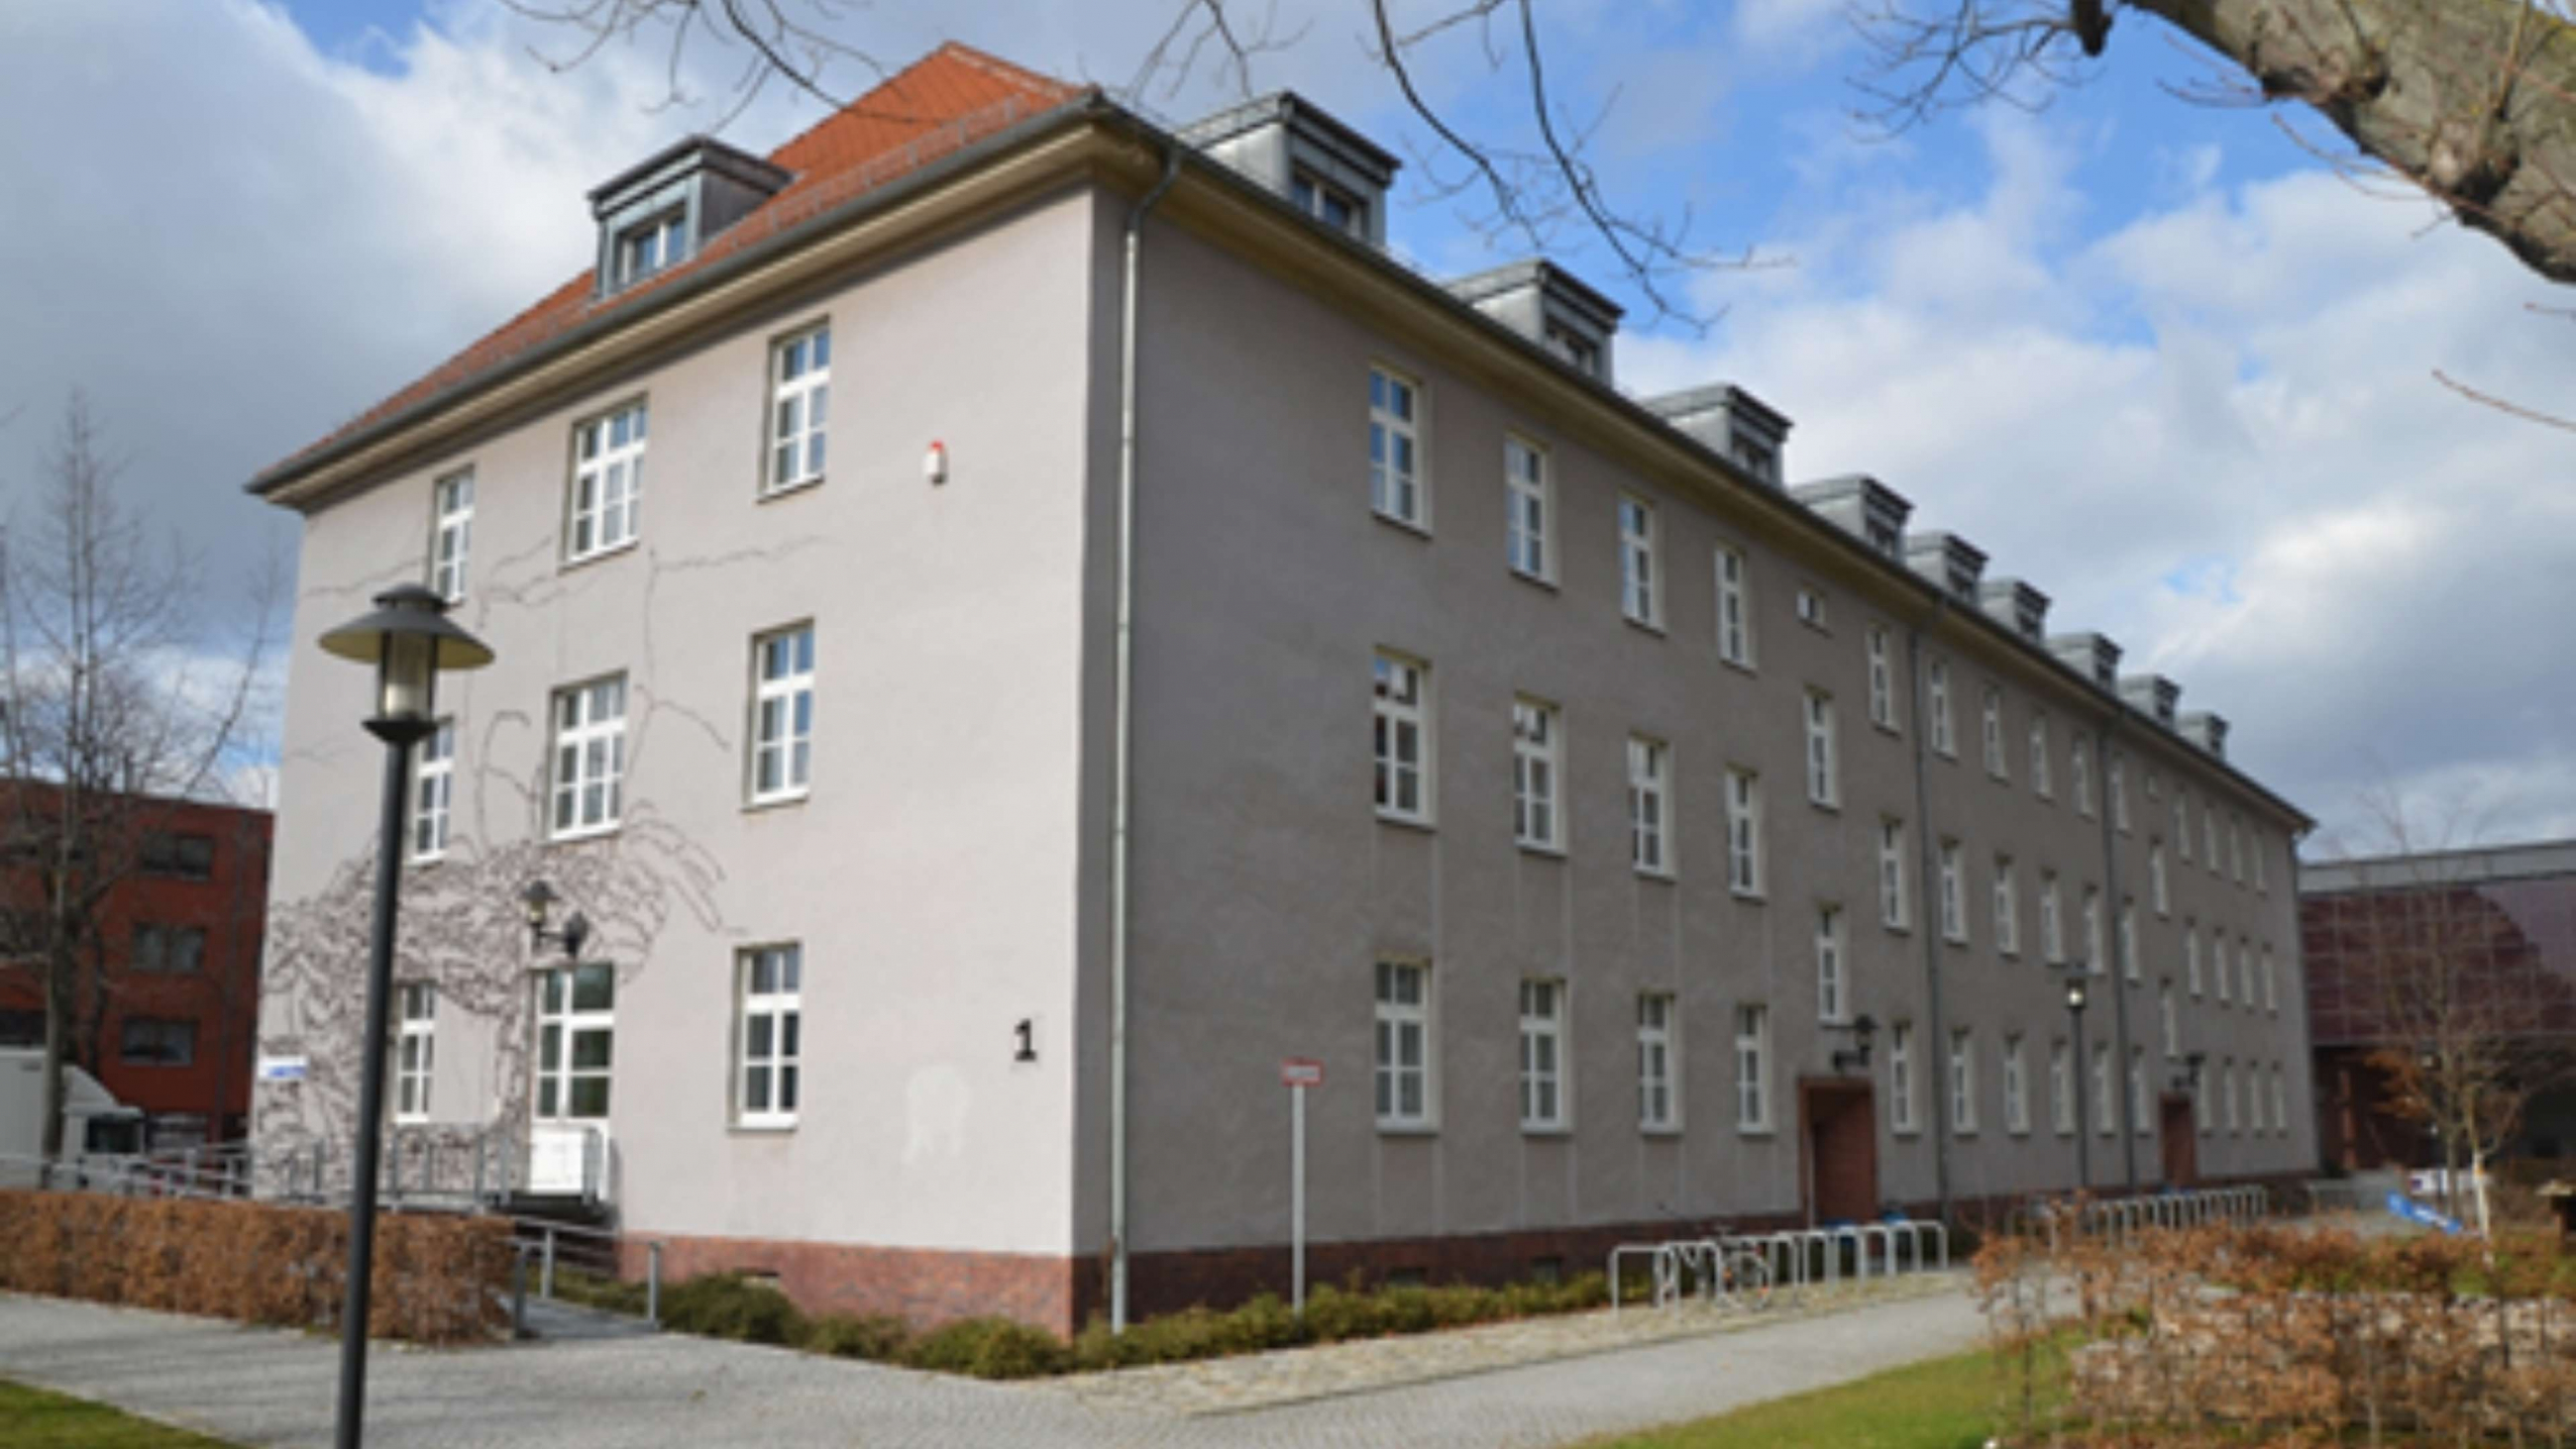 Haus 1 der Fachhochschule Potsdam